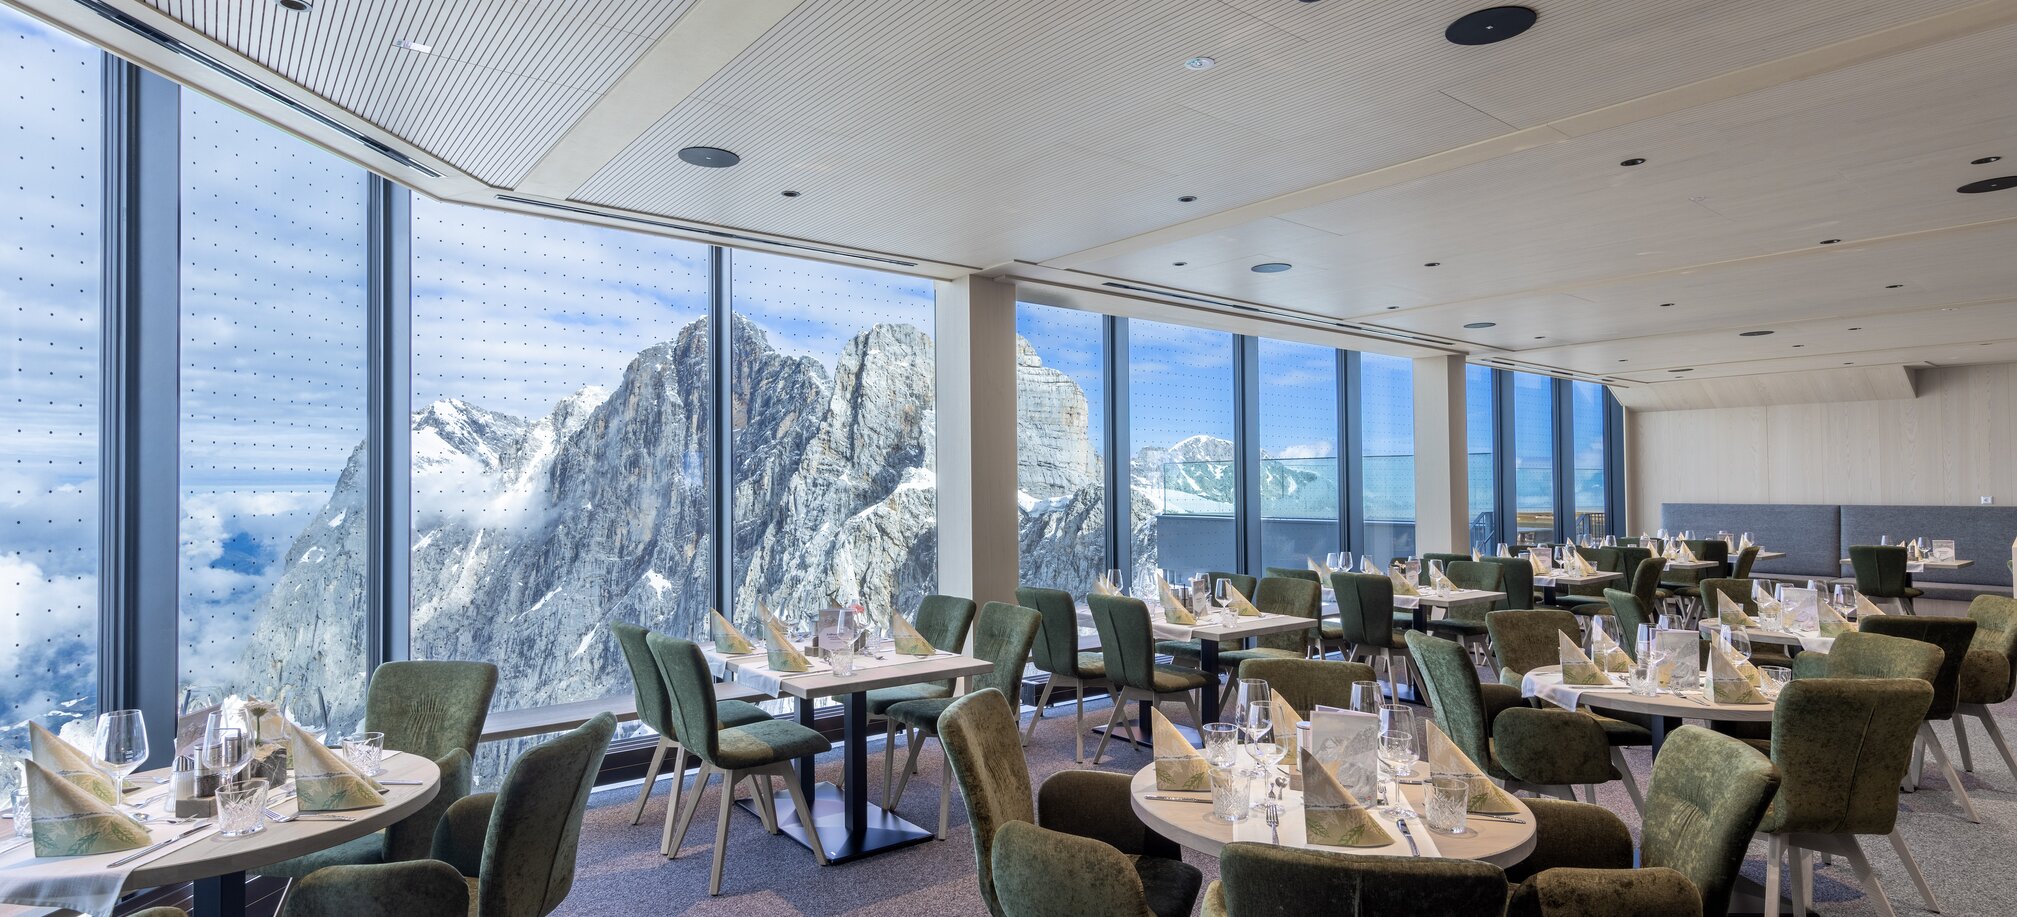 Glacier restaurant | © Harald Steiner